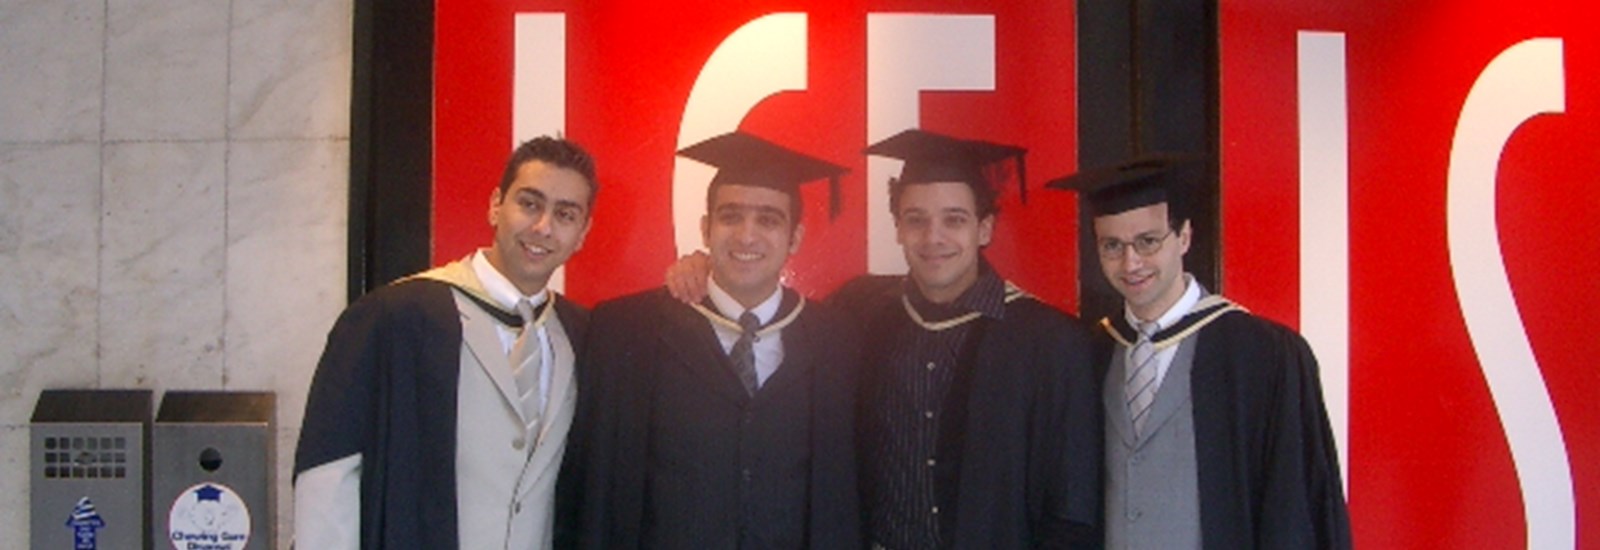 LSE Alumni